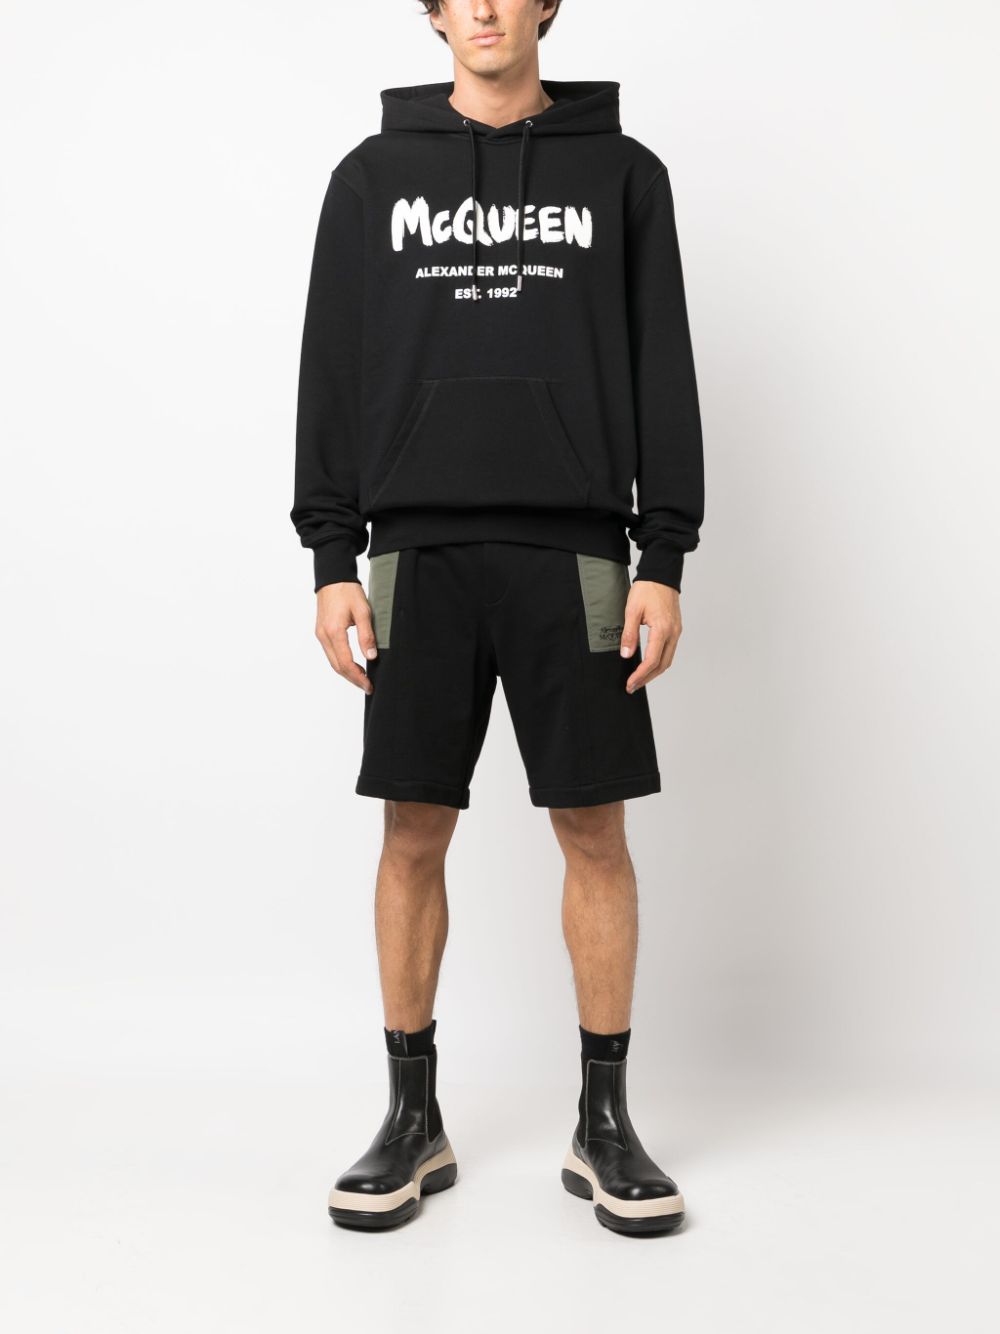 Alexander Mcqueen Alexander McQueen Shorts Black